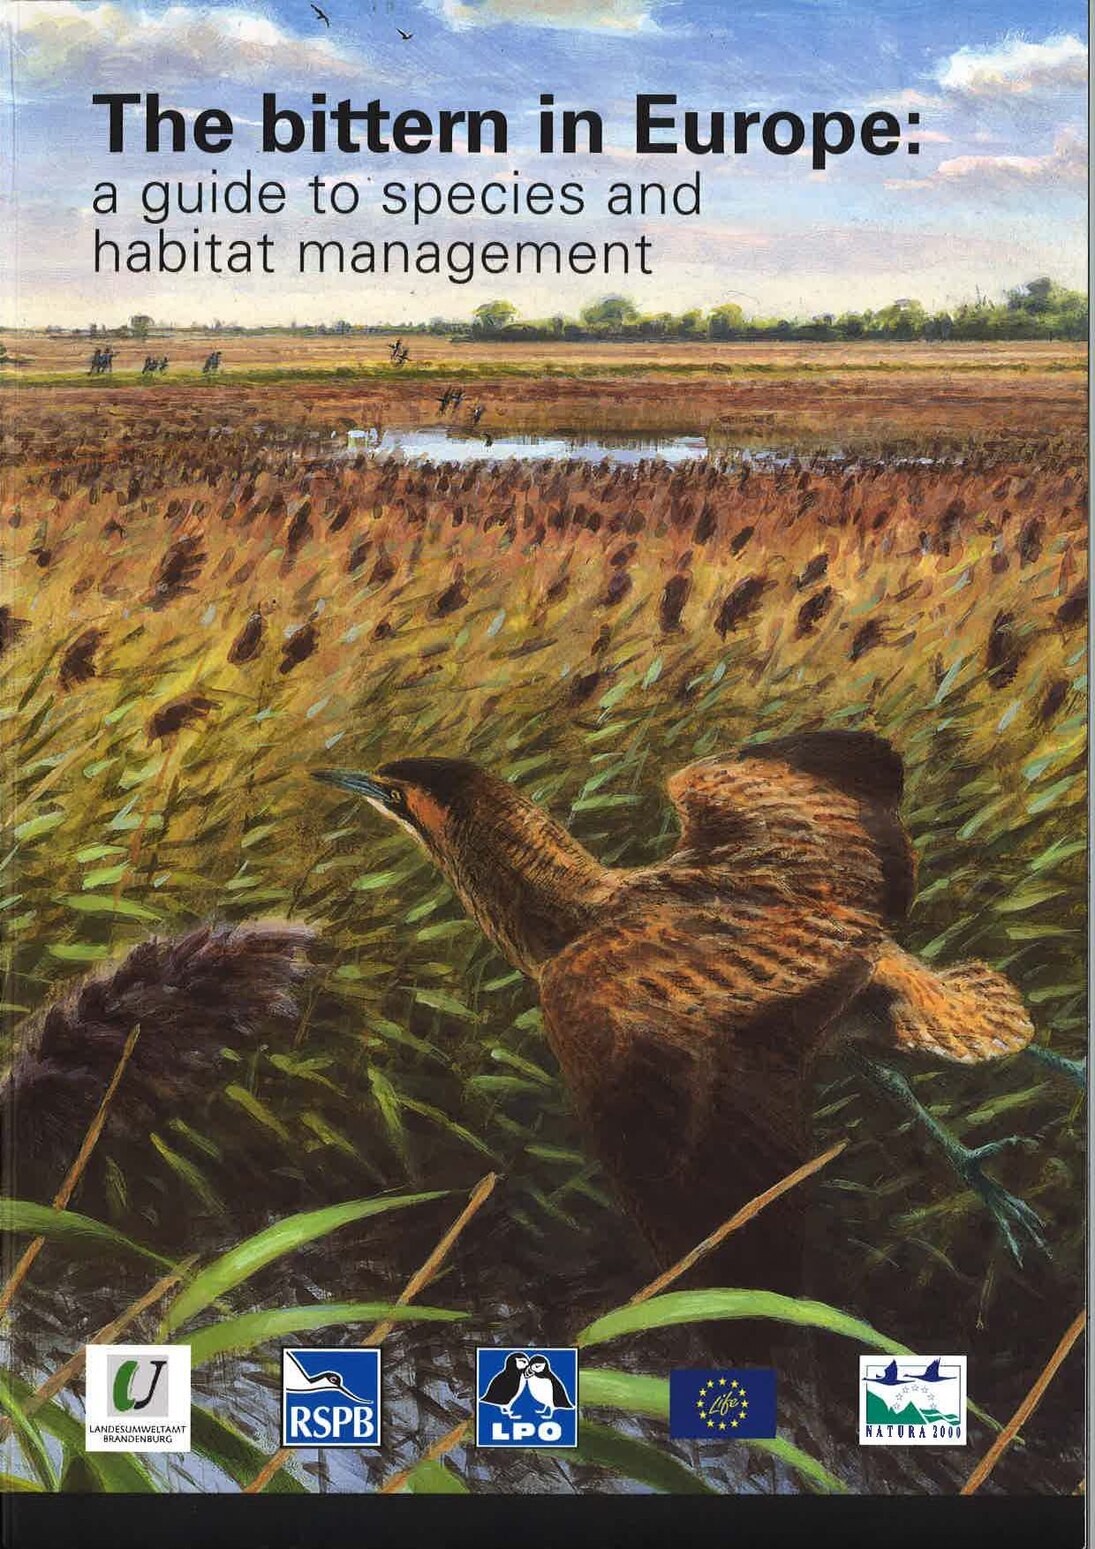 Titelbild des Buches, zu dem die Vogelschutzwarte einen Beitrag geleistet hat